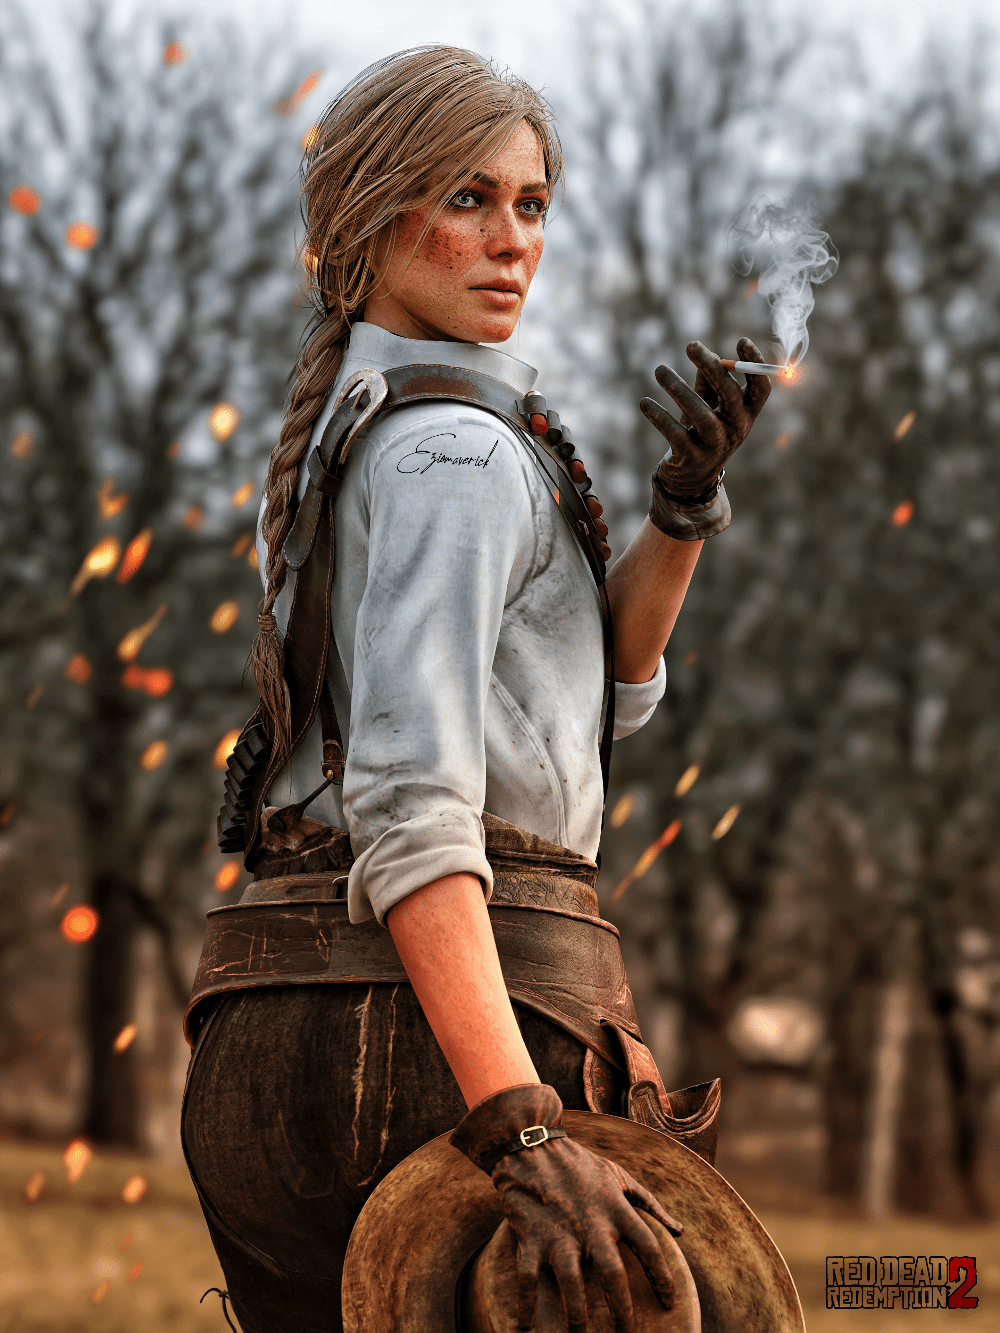 Sadie adler (Red Dead Redemption 2) by EzioMaverick on DeviantArt